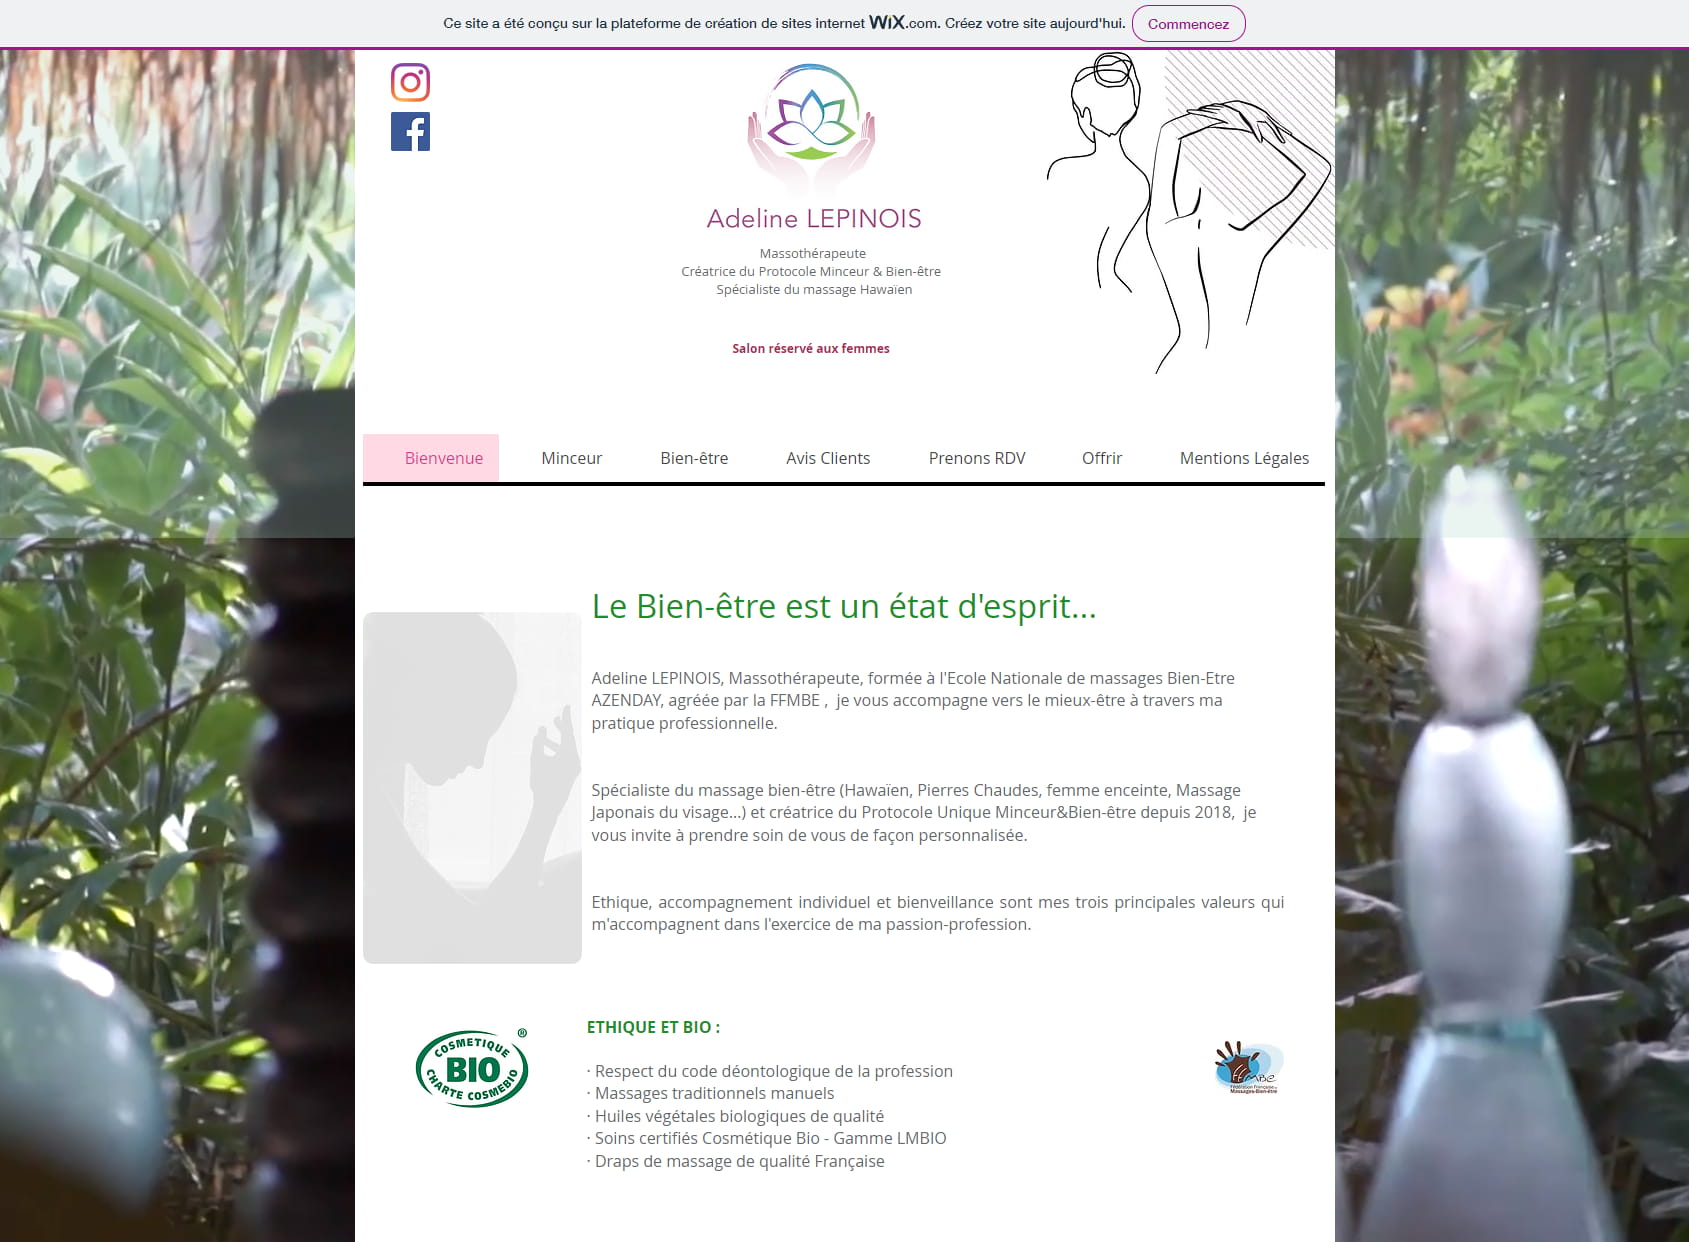 Adeline LEPINOIS - Massothérapeute - Massages Bien-être et Protocole Minceur&Bien-être